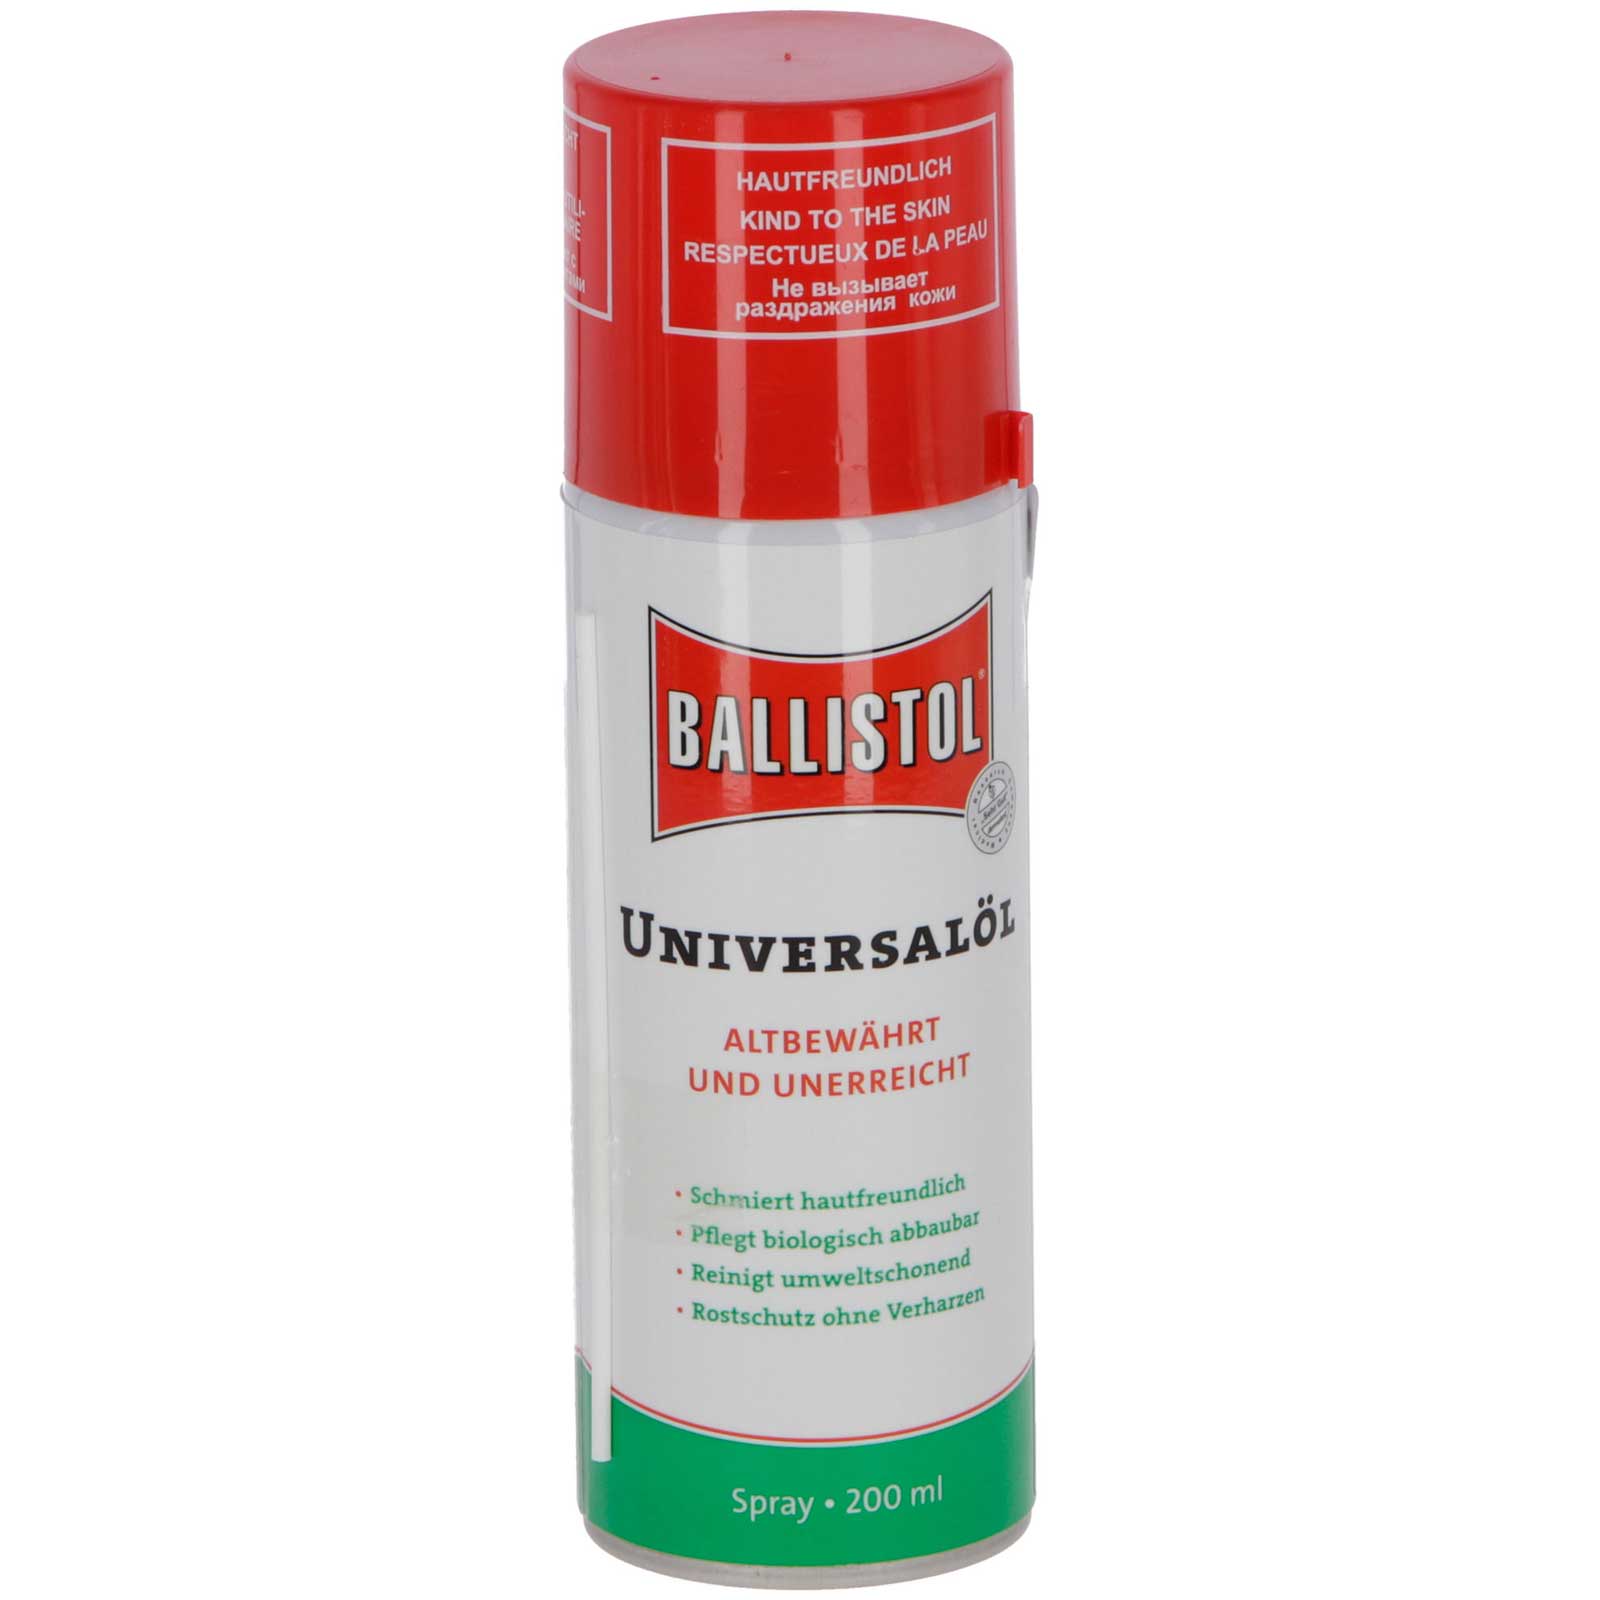 BALLISTOL Olio universale spray 200 ml